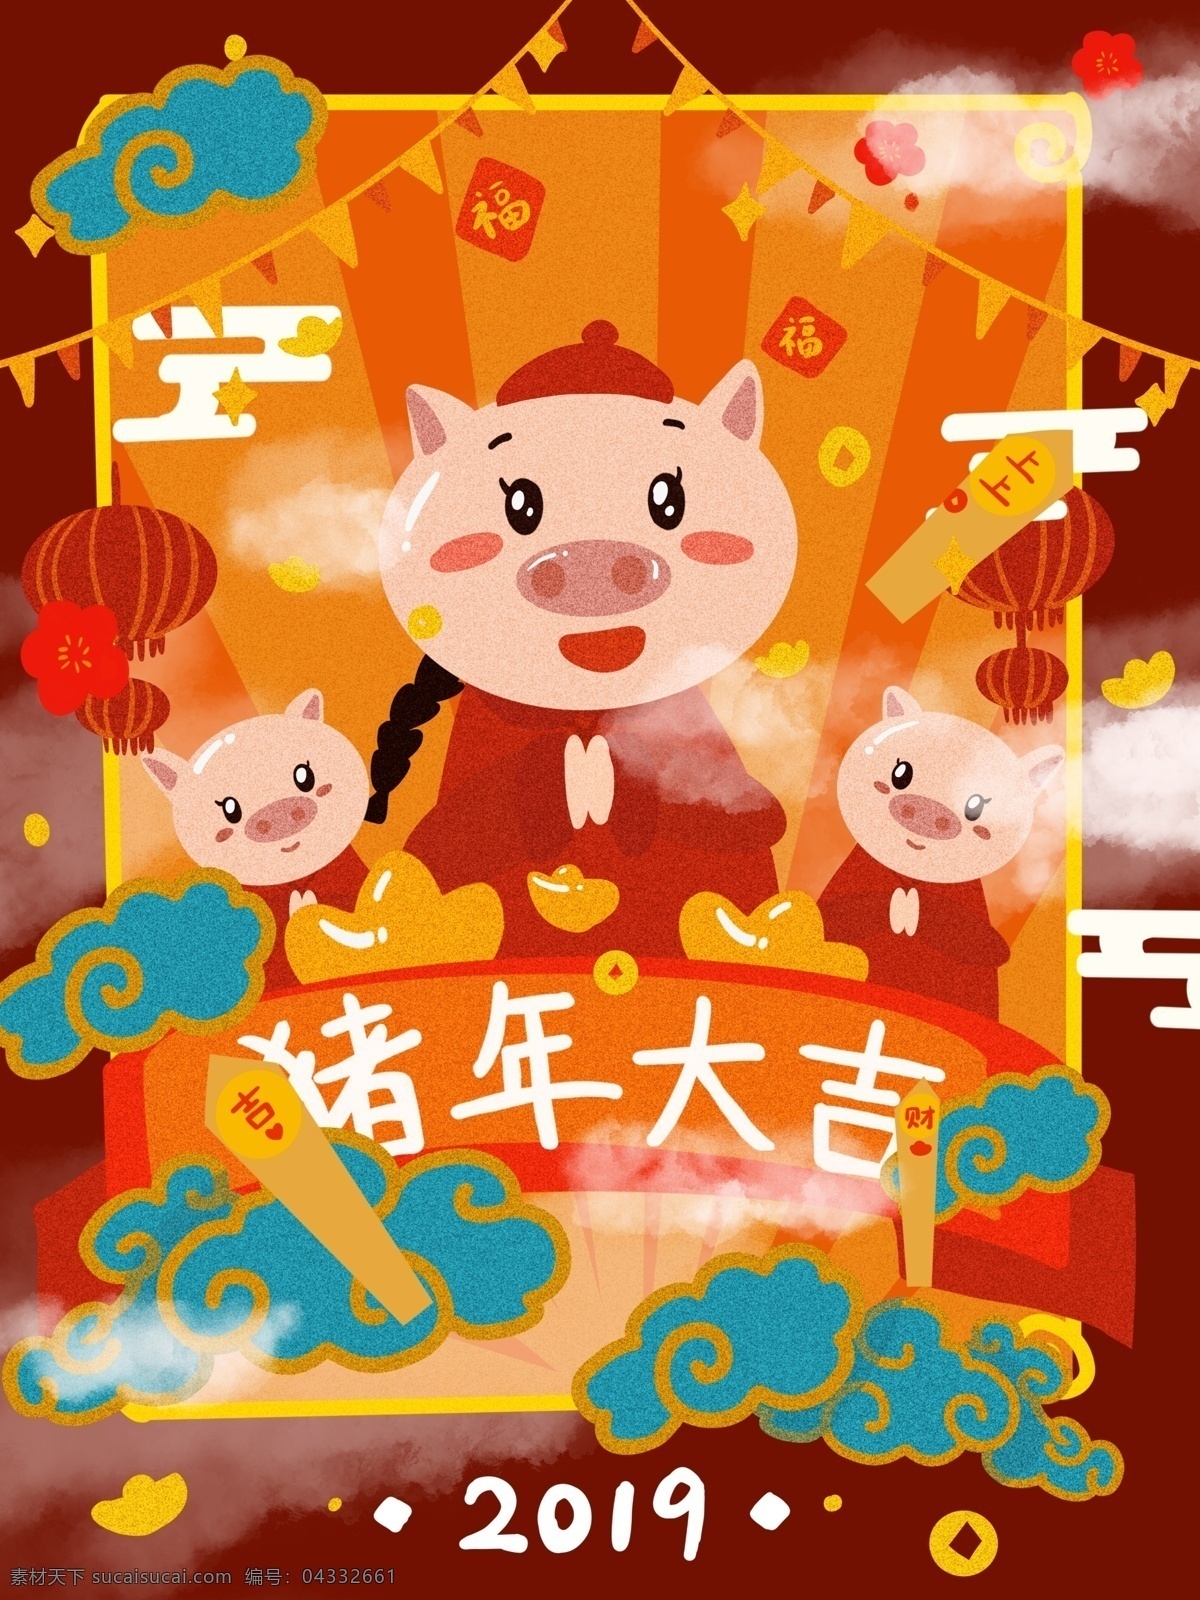 猪年 赢 好运 云彩 灯笼 福字 祈福 节日 中 国风 插画 猪 中国风 卡通 好运祈福 抽签 拜年